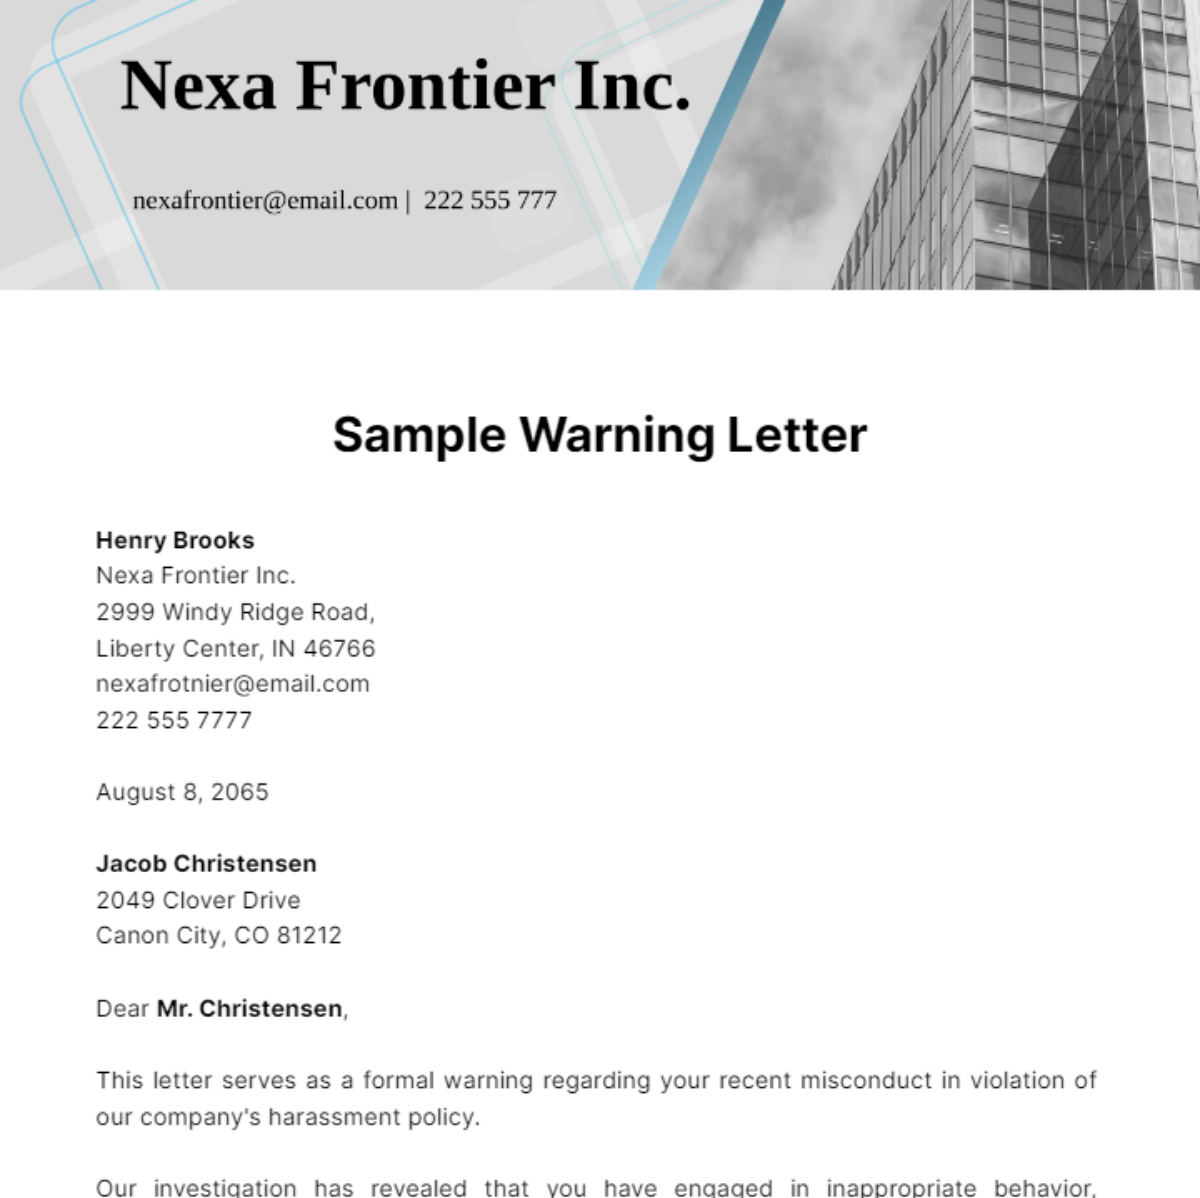 Sample Warning Letter Template